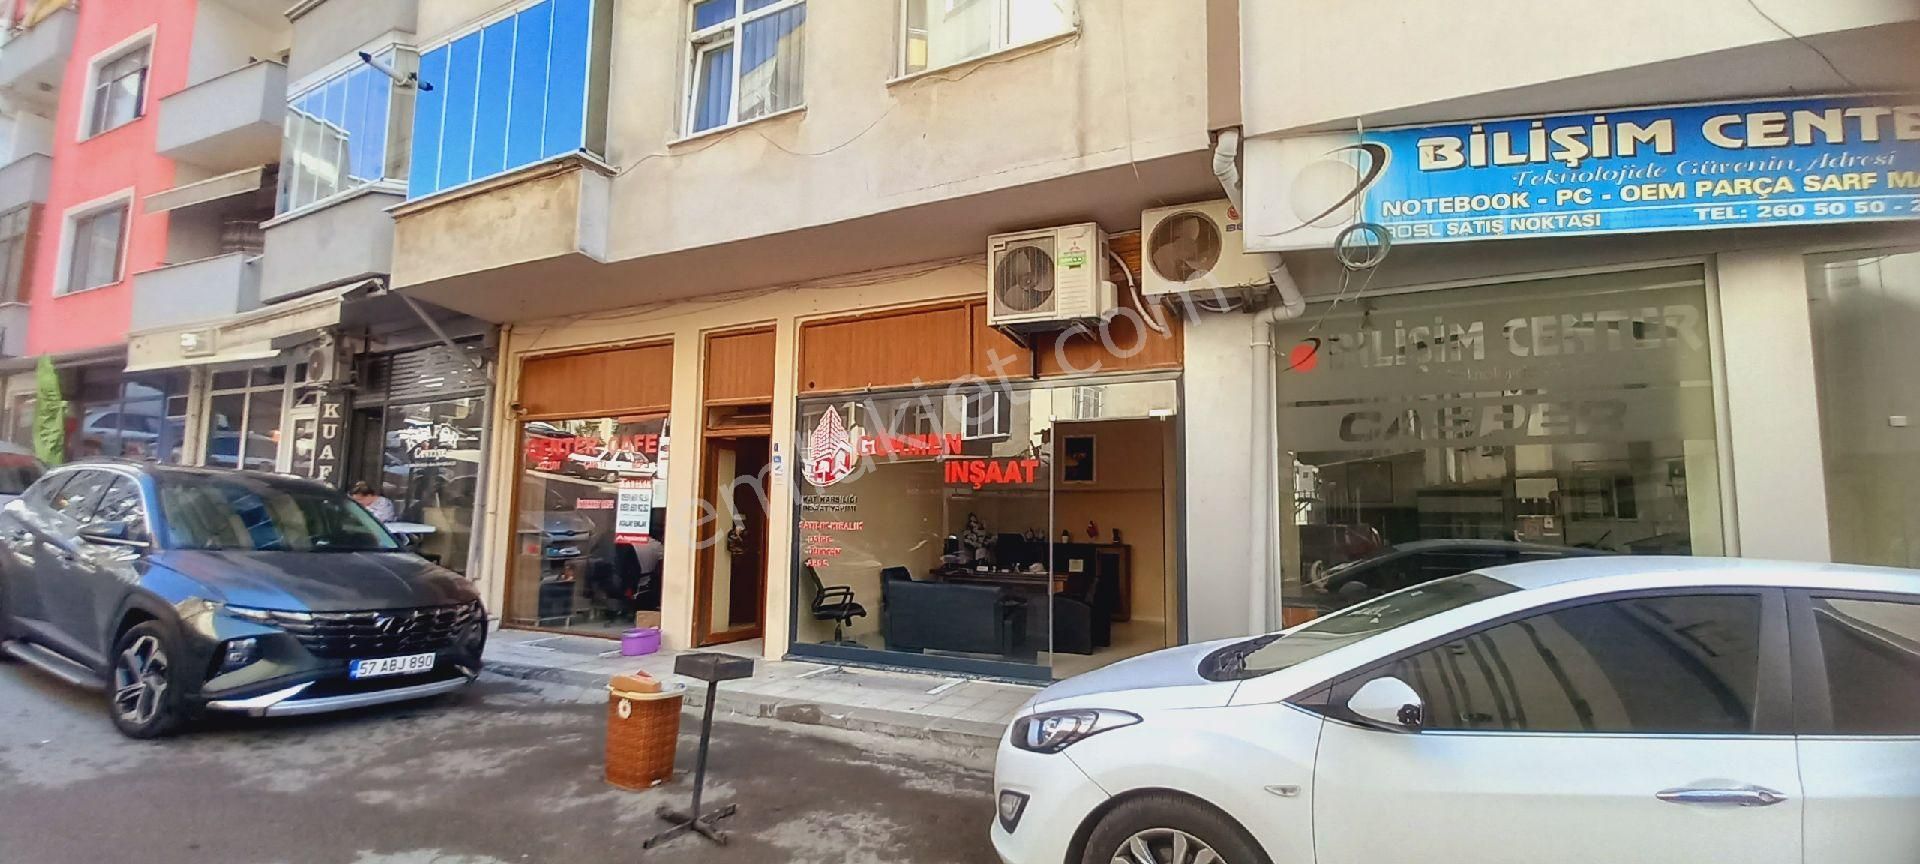 Sinop Merkez Yeni Satılık Dükkan & Mağaza Sinop Yeni Mahallede Caddeye Yakın 2 ADET 2 Ayrı Tapulu Satılık Dükkan 